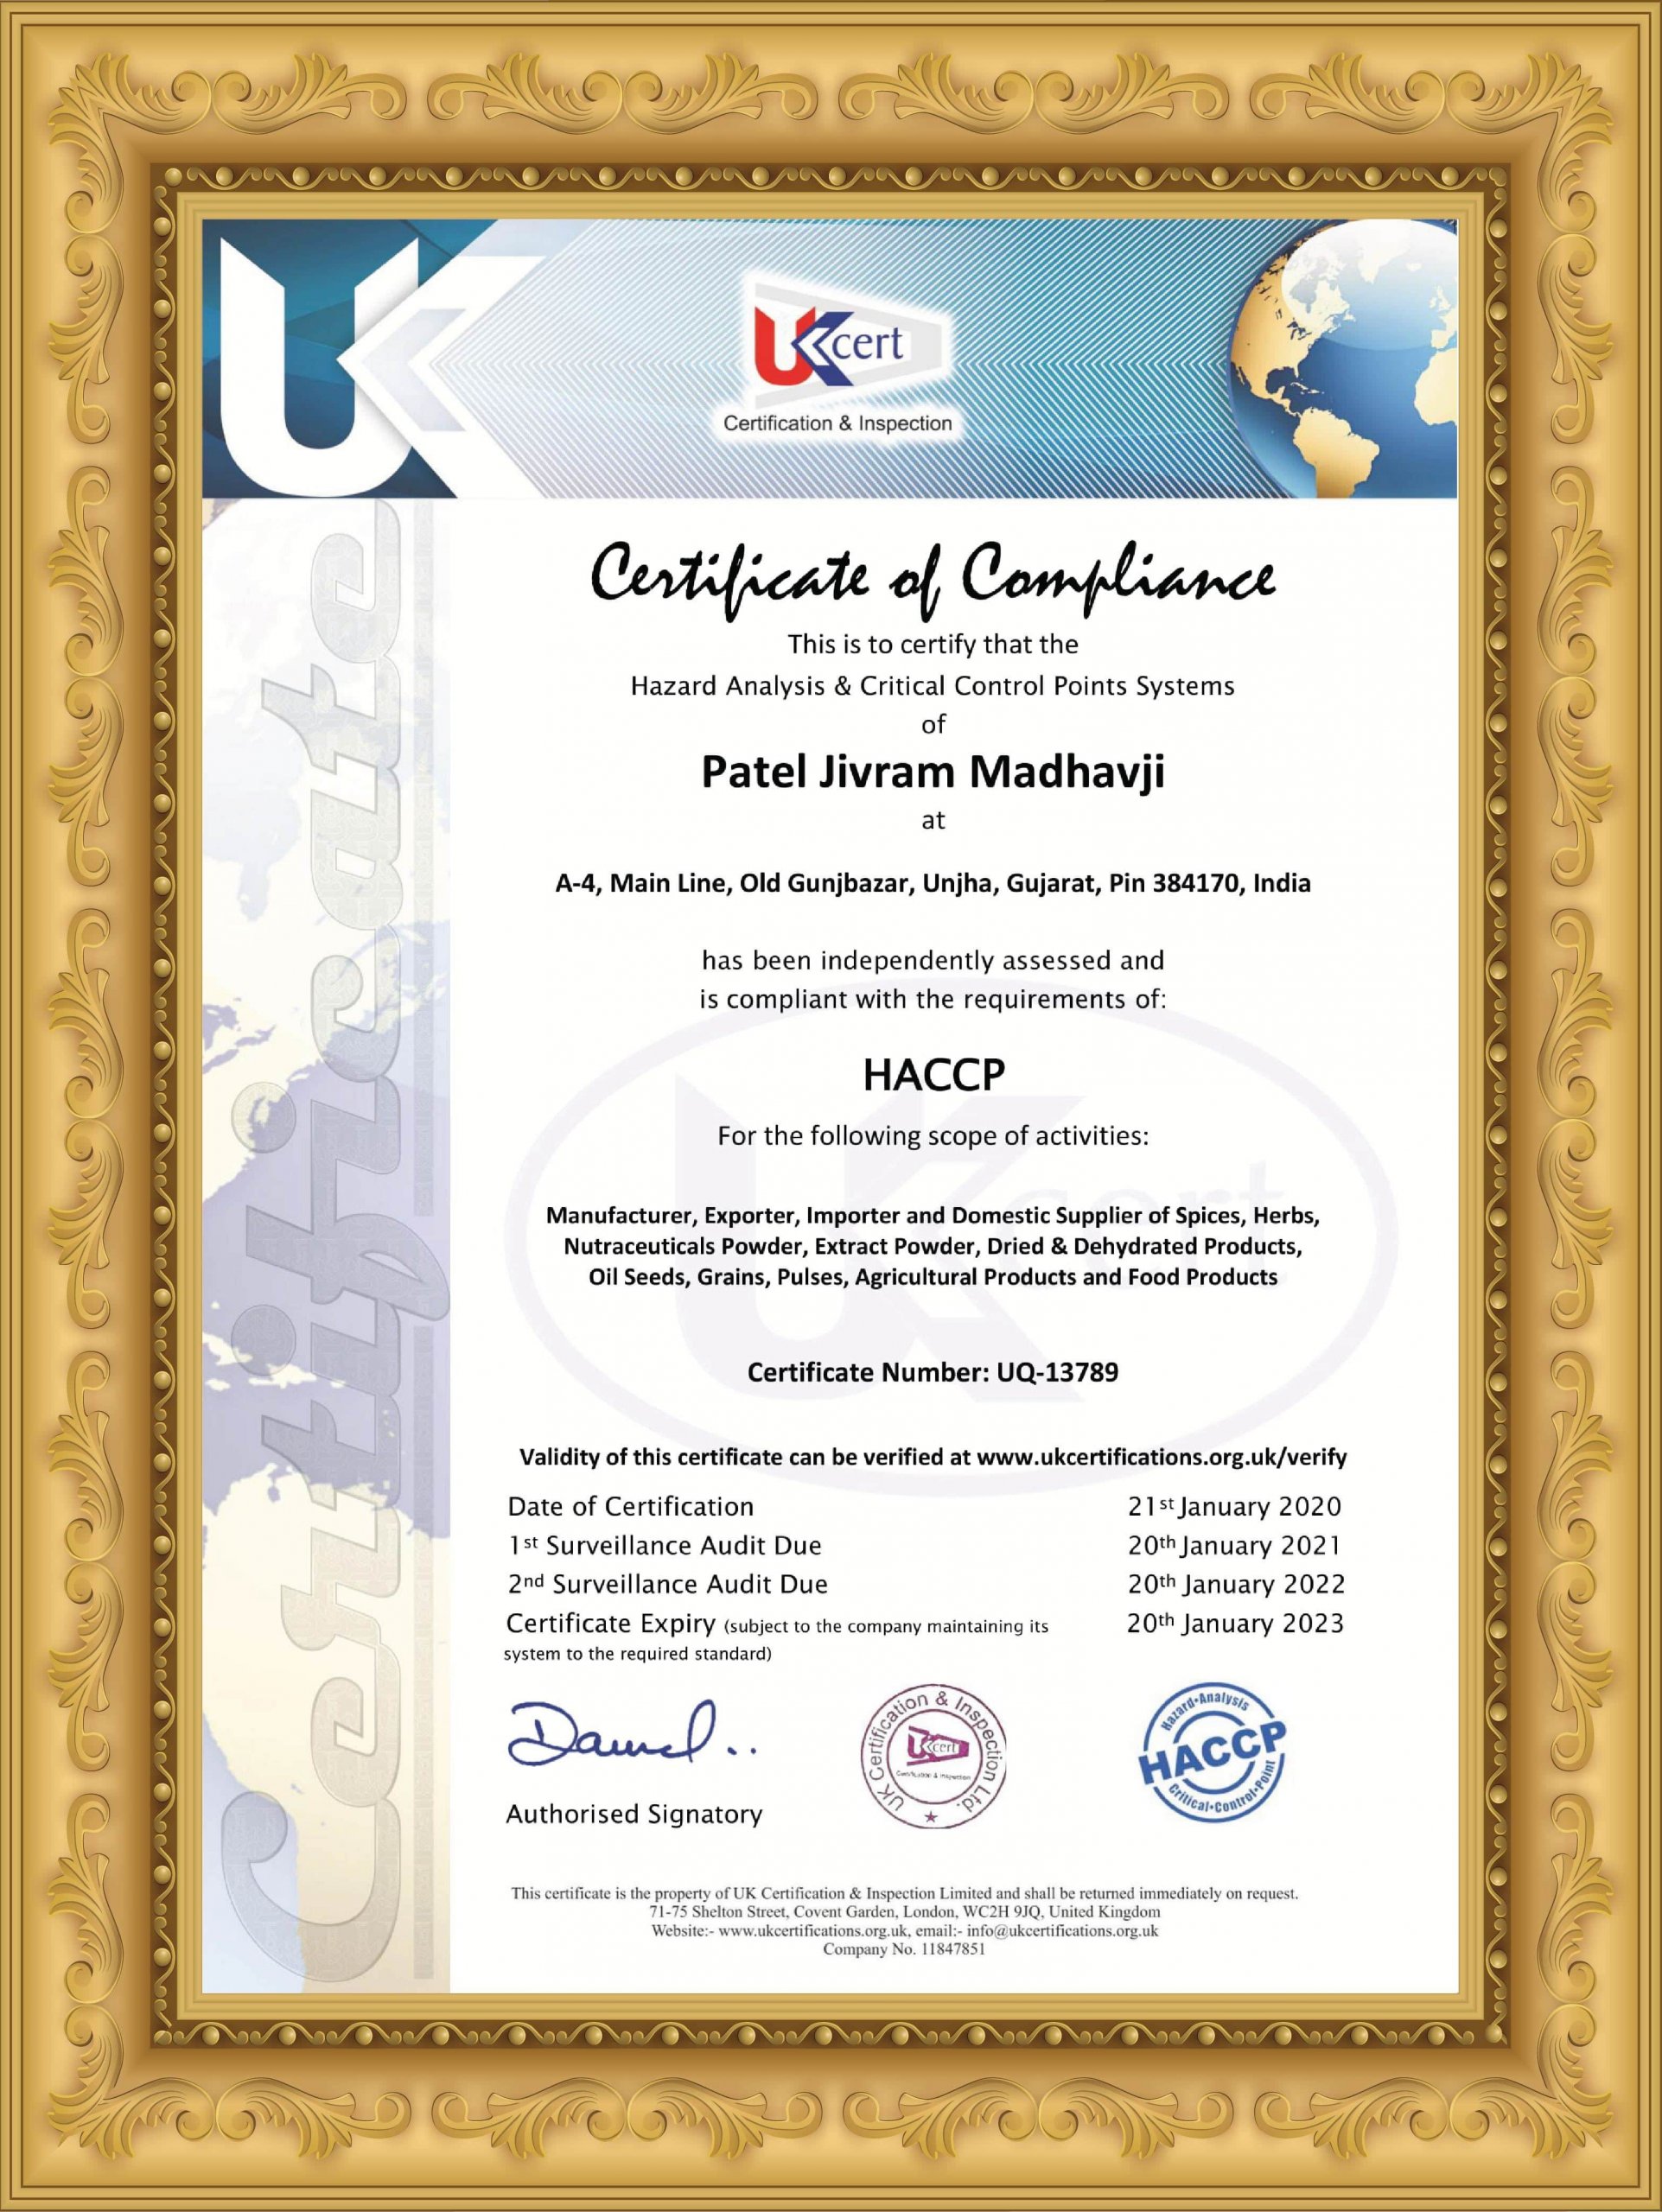 PJM HACCP Certificate PJM Unjha